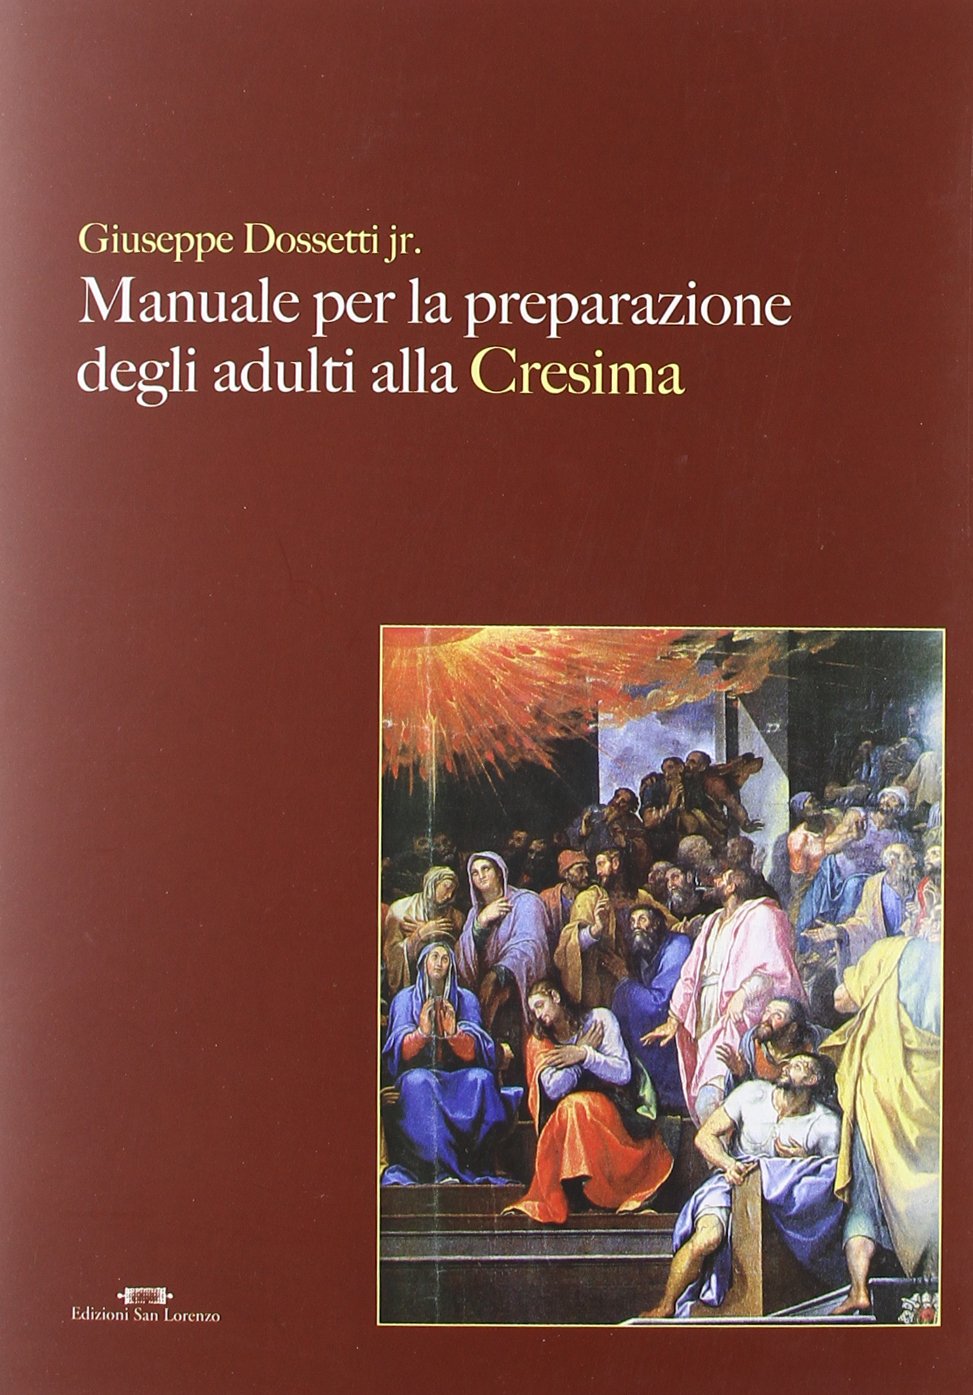 Manuale per la preparazione degli adulti alla cresima - GIUSEPPE DOSSETTI jr. - Edizioni San Lorenzo